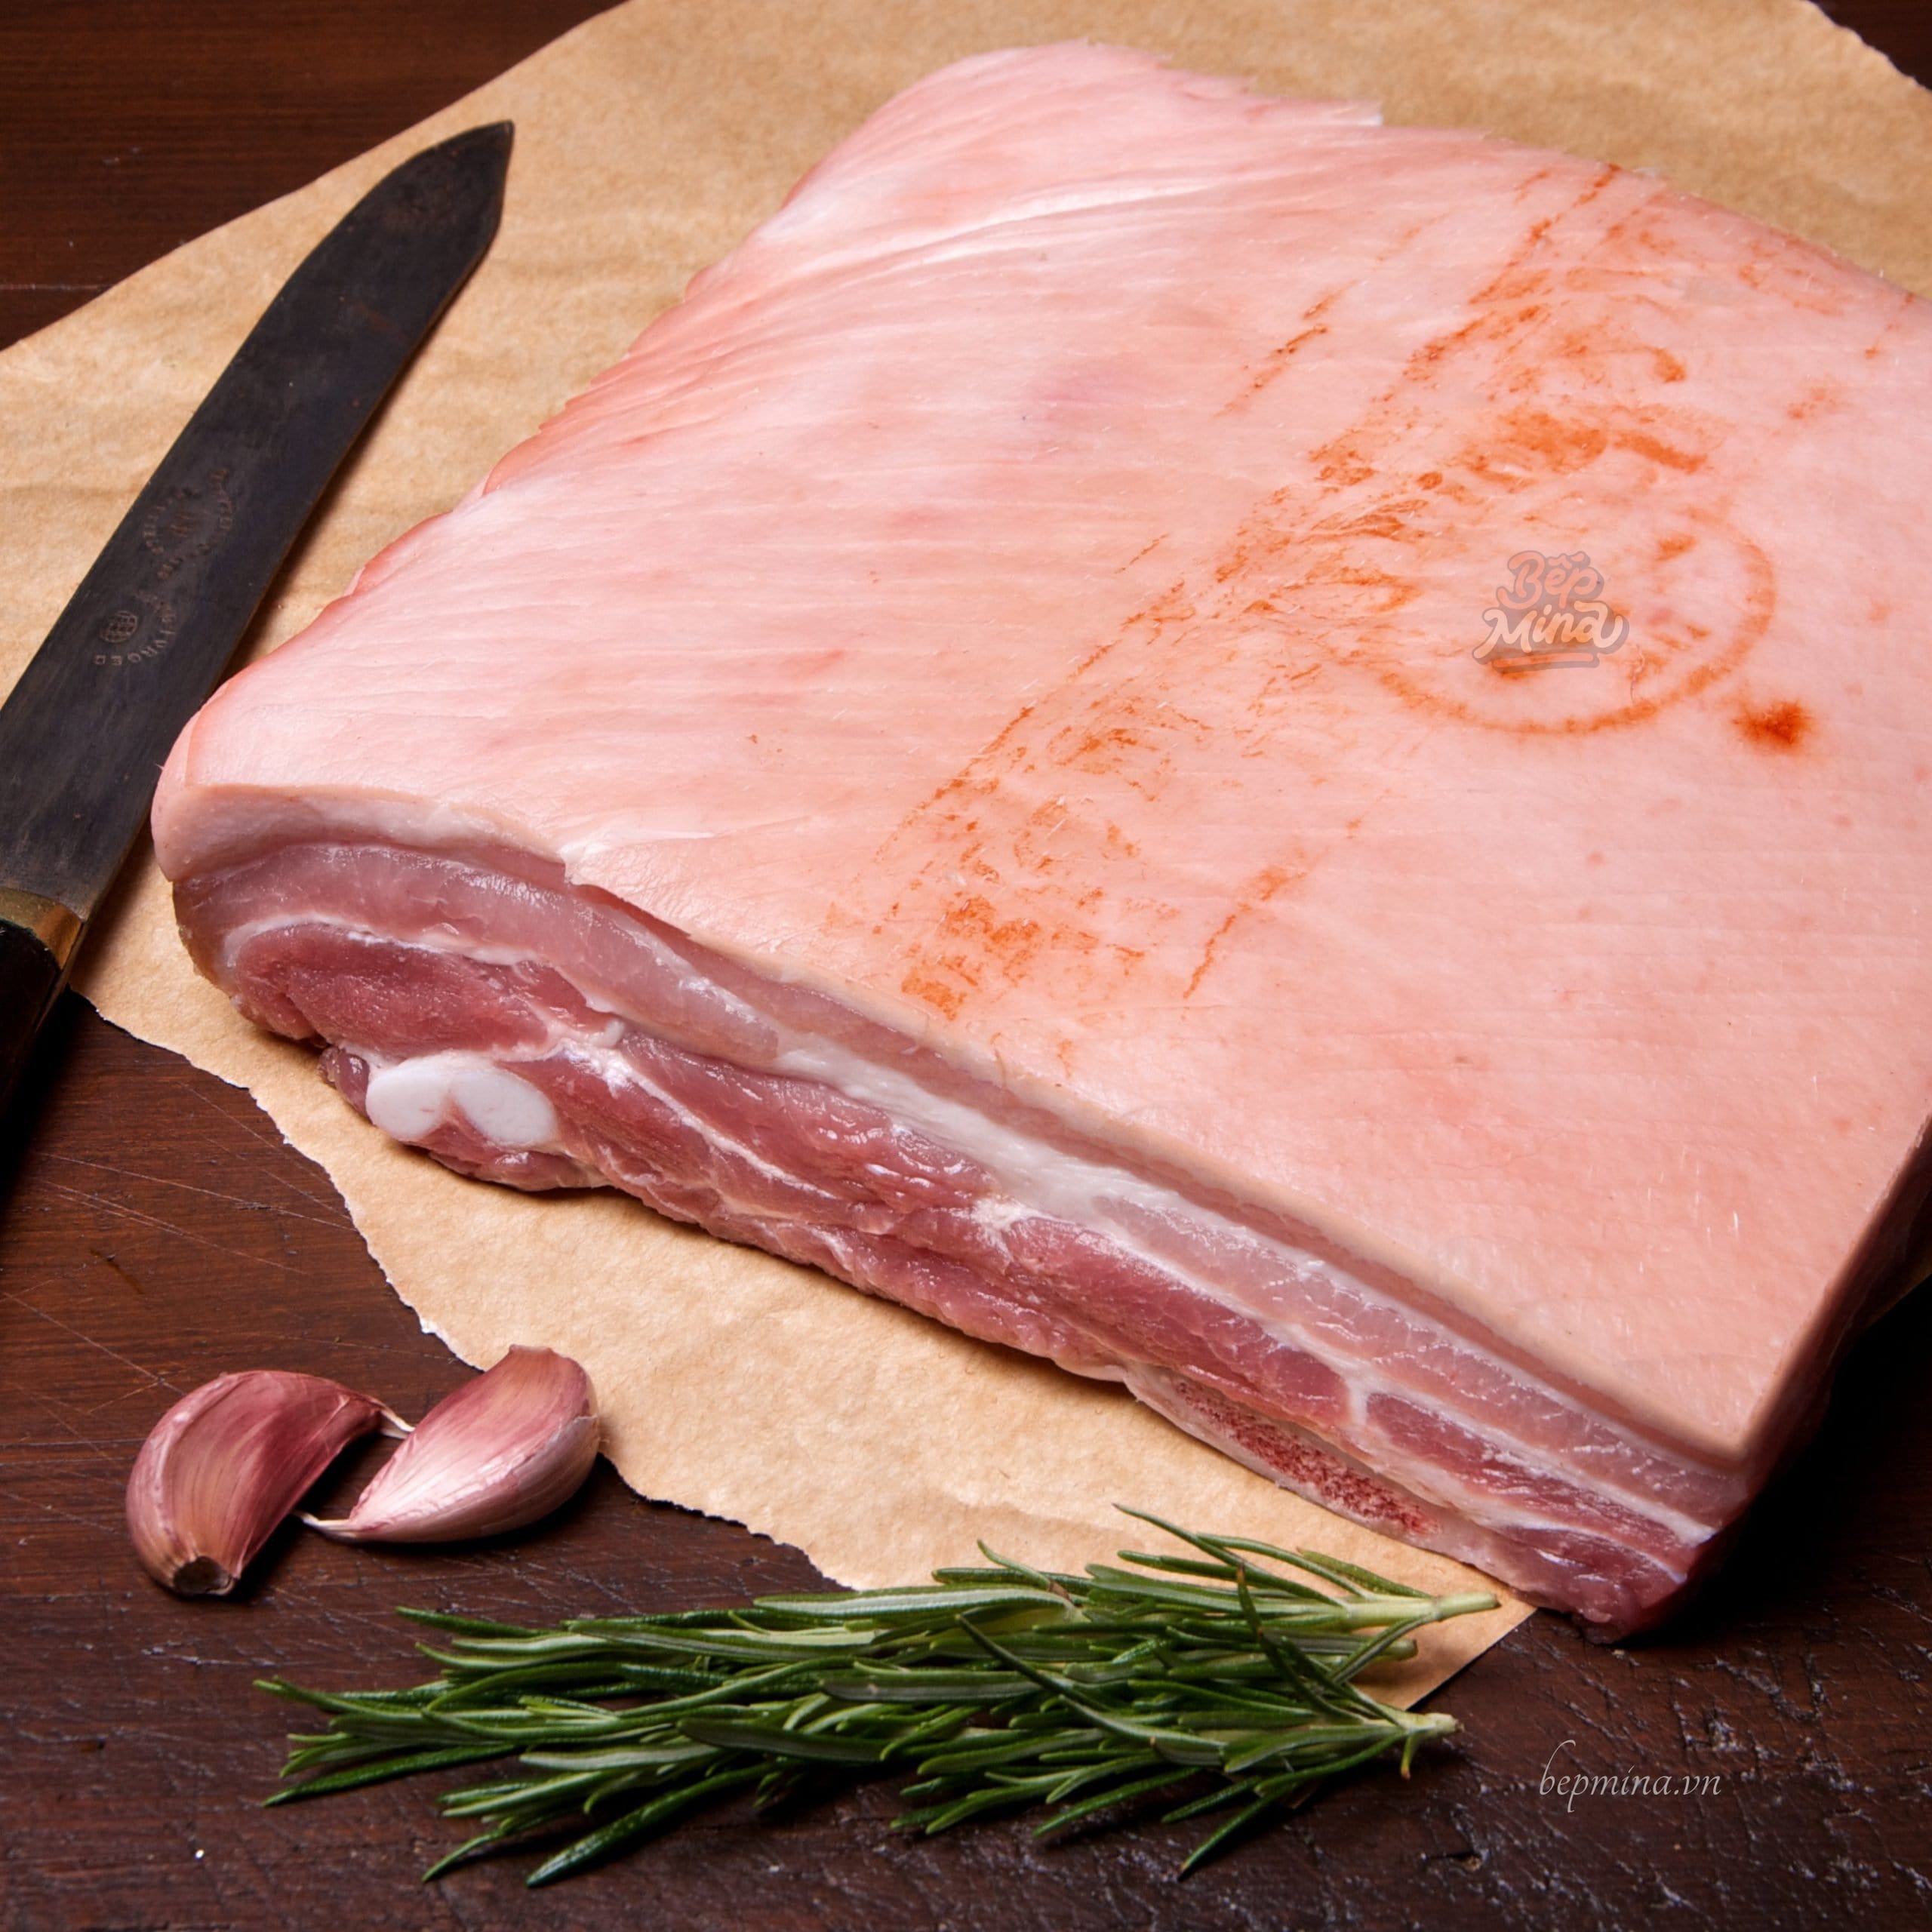 Cách Làm Phở Cuốn Thịt Lợn Ngon, Dễ Ăn Chống Ngán